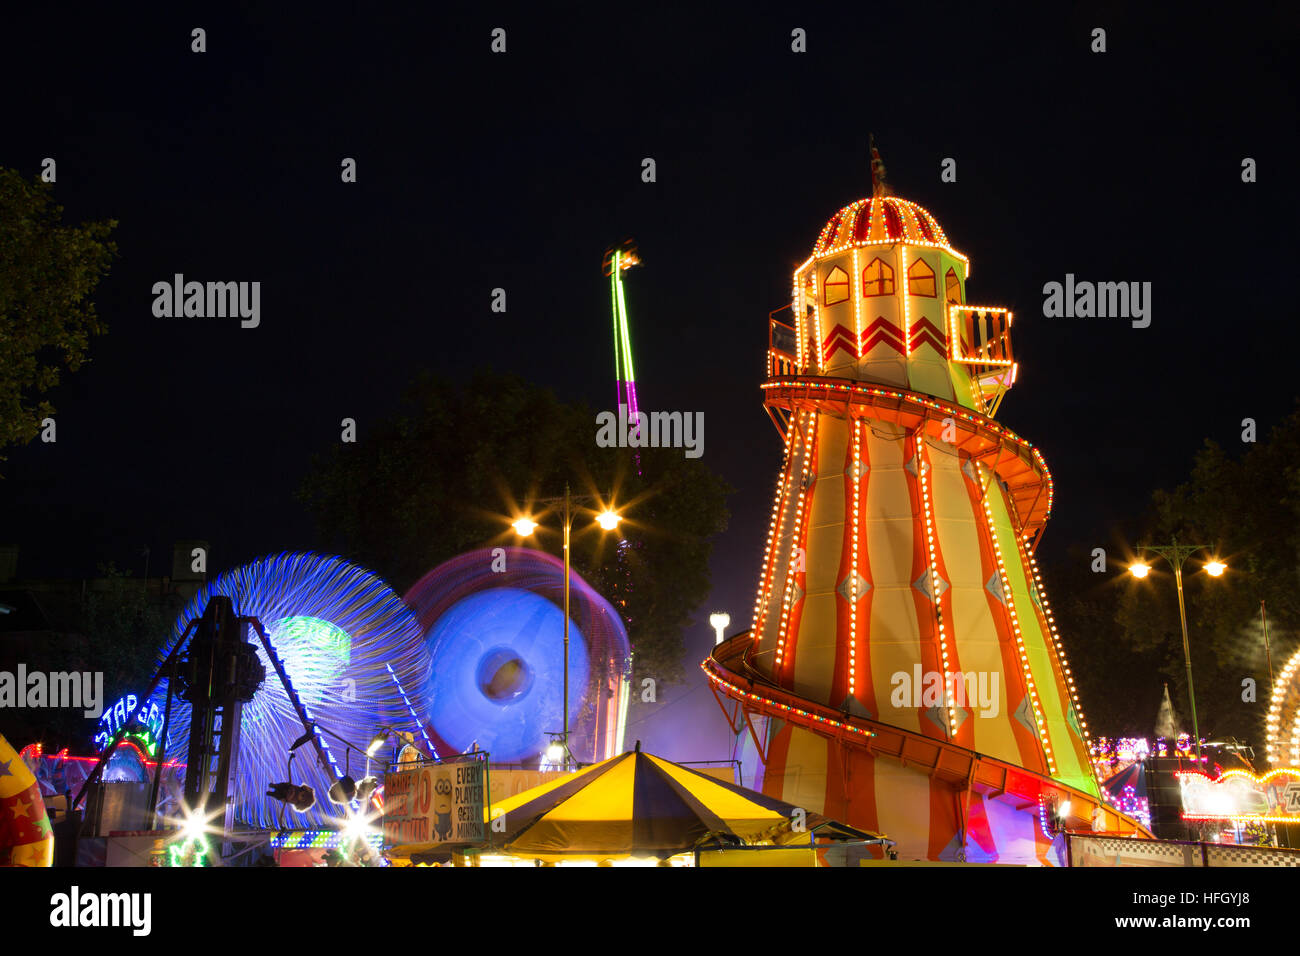 Fairground rides at night -  St Giles Fair, Oxford Stock Photo